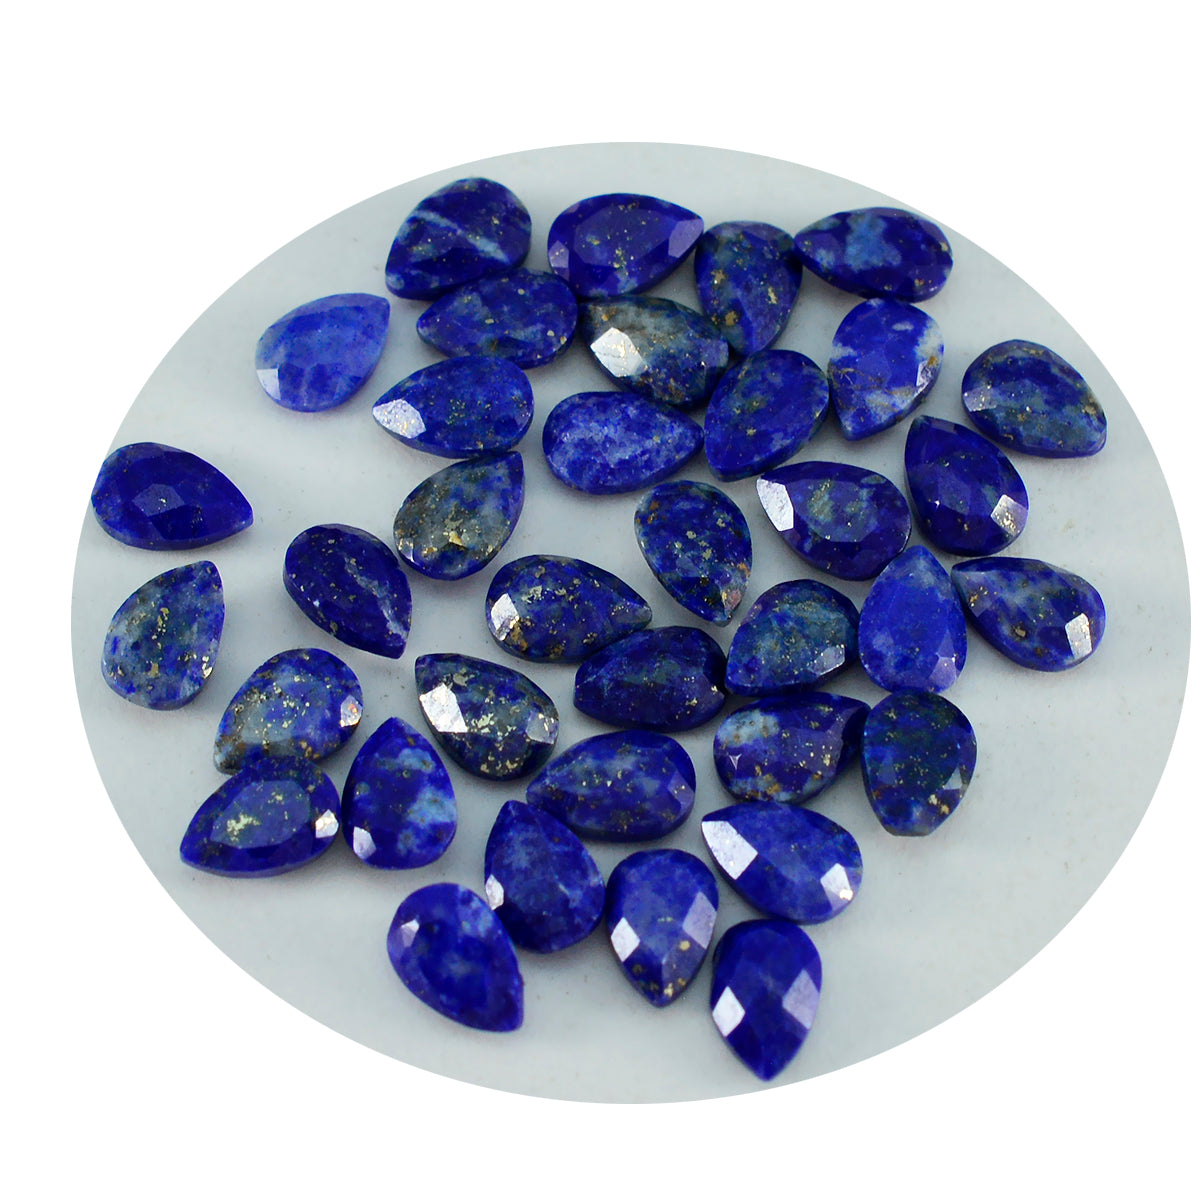 Riyogems 1 Stück echter blauer Lapislazuli, facettiert, 3 x 5 mm, Birnenform, tolle Qualitäts-Edelsteine